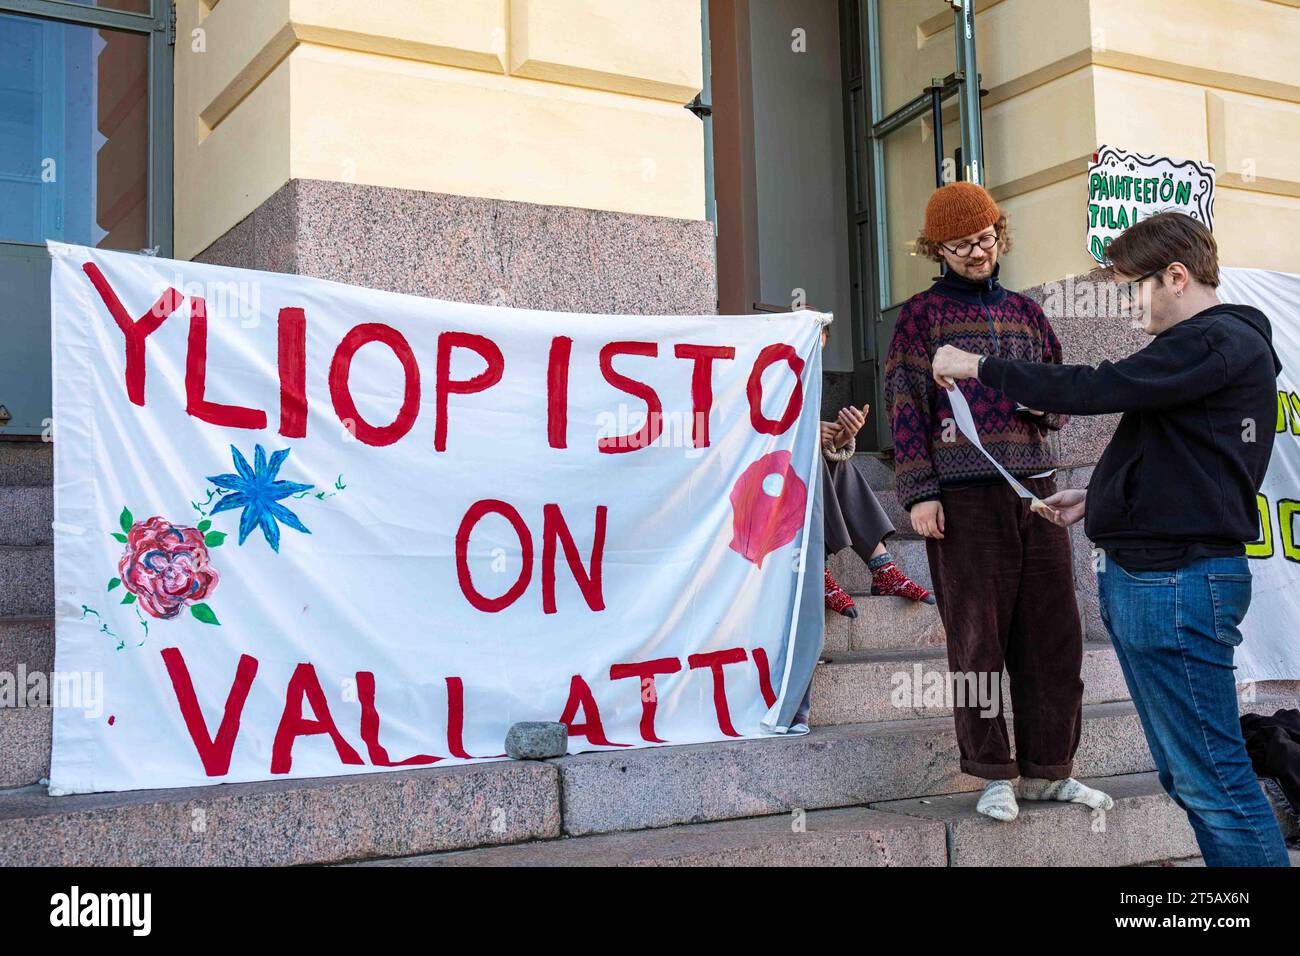 Yliopisto am Vallattu. Banner und Studenten vor der Universität Helsinki während eines Sitzungsprotests gegen Budgetkürzungen in Helsinki, Finnland. Stockfoto